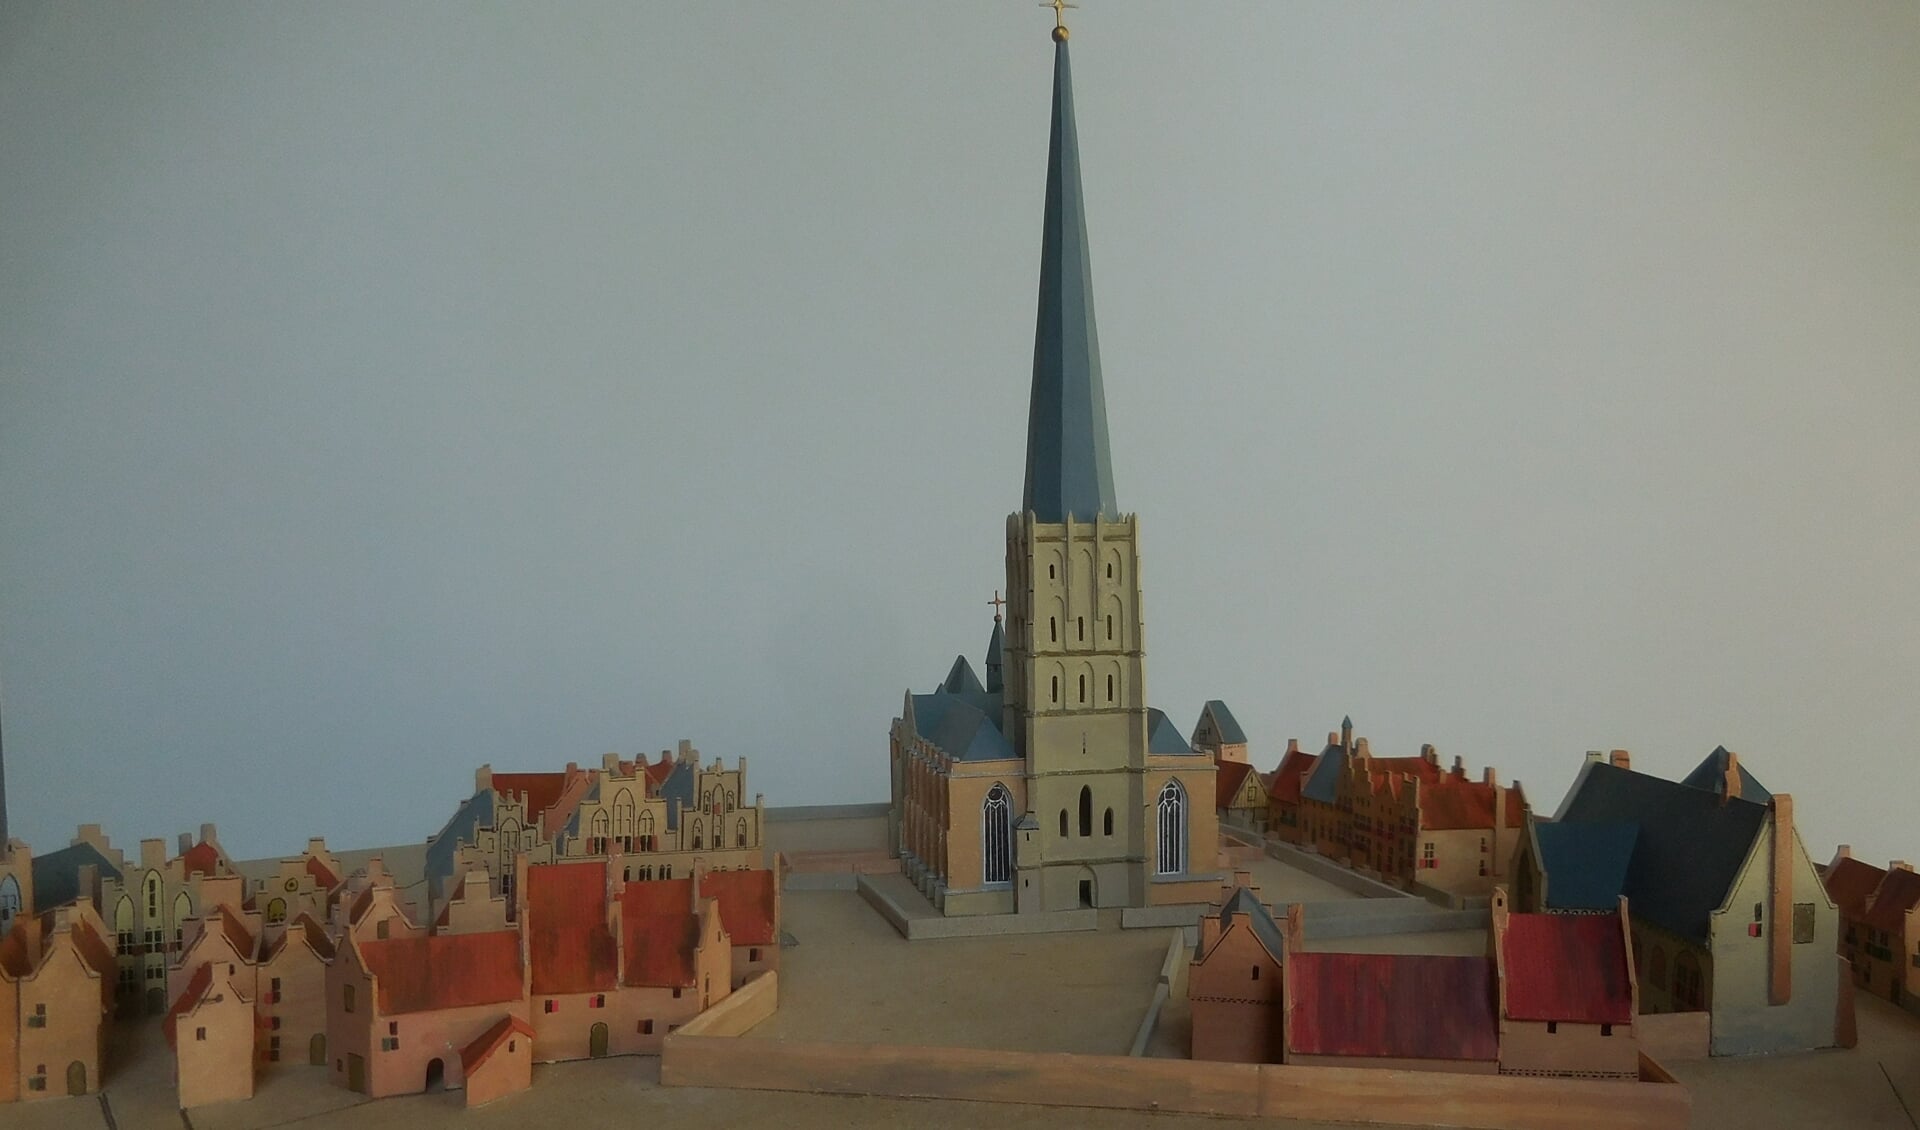 De maquette van de Walburgiskerk en directe omgeving is tot en met 31 oktober te zien in de Copernicustentoonstelling. Foto: PR